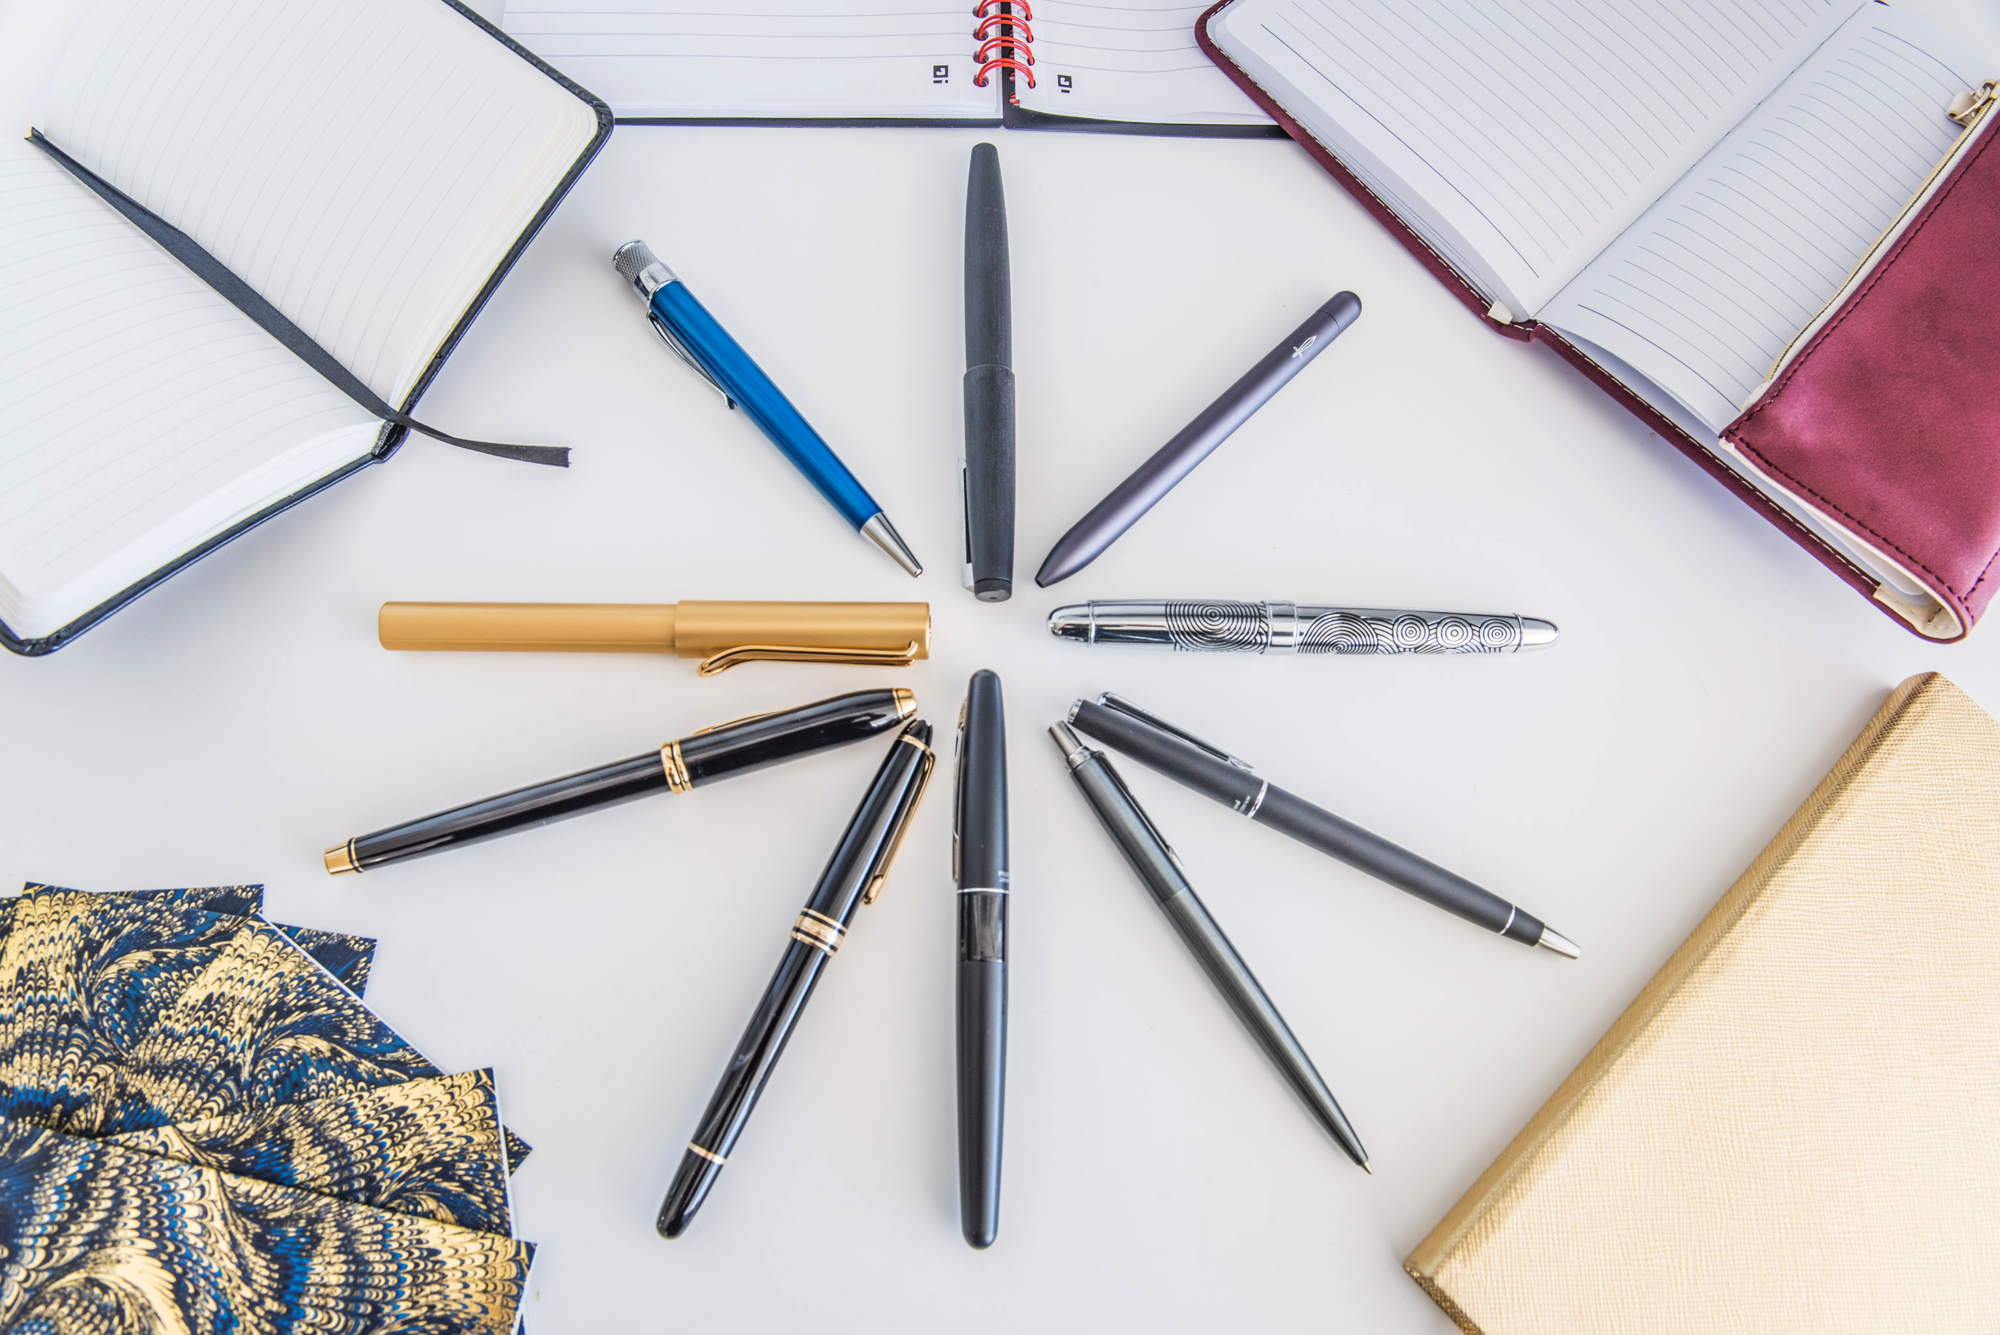 Luxury Pen Business Office Fancy Pens Executive Pen Pen Sets for Men Gift  wit